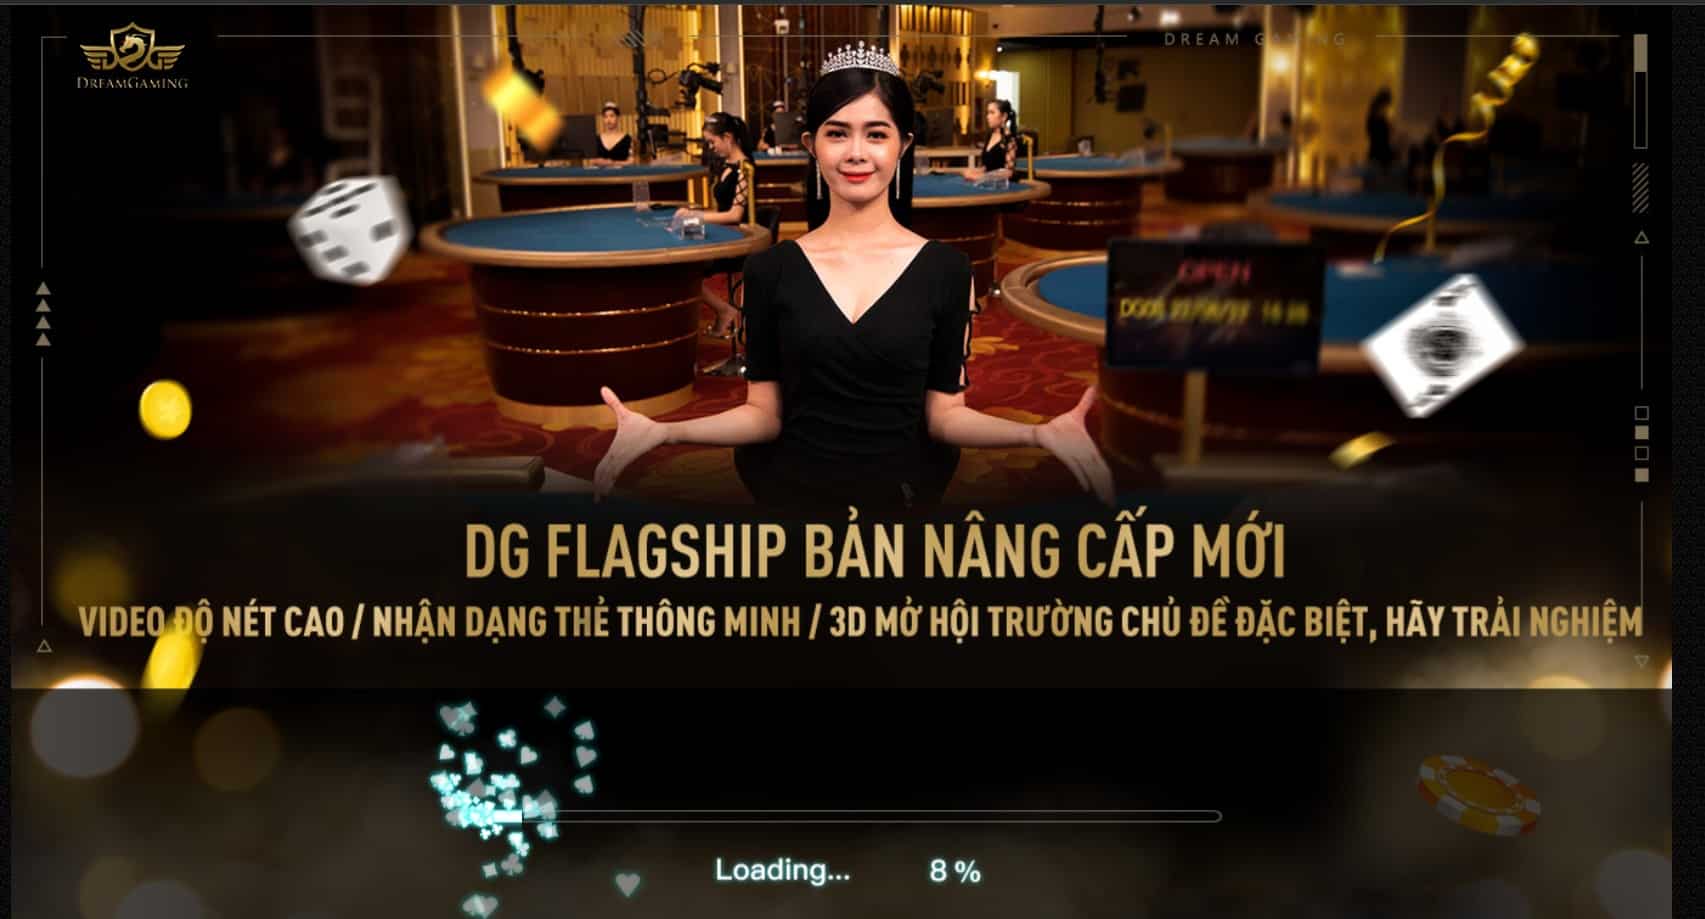 Tìm Hiểu Dream Gaming – Sảnh Cược Casino Live Hấp Dẫn